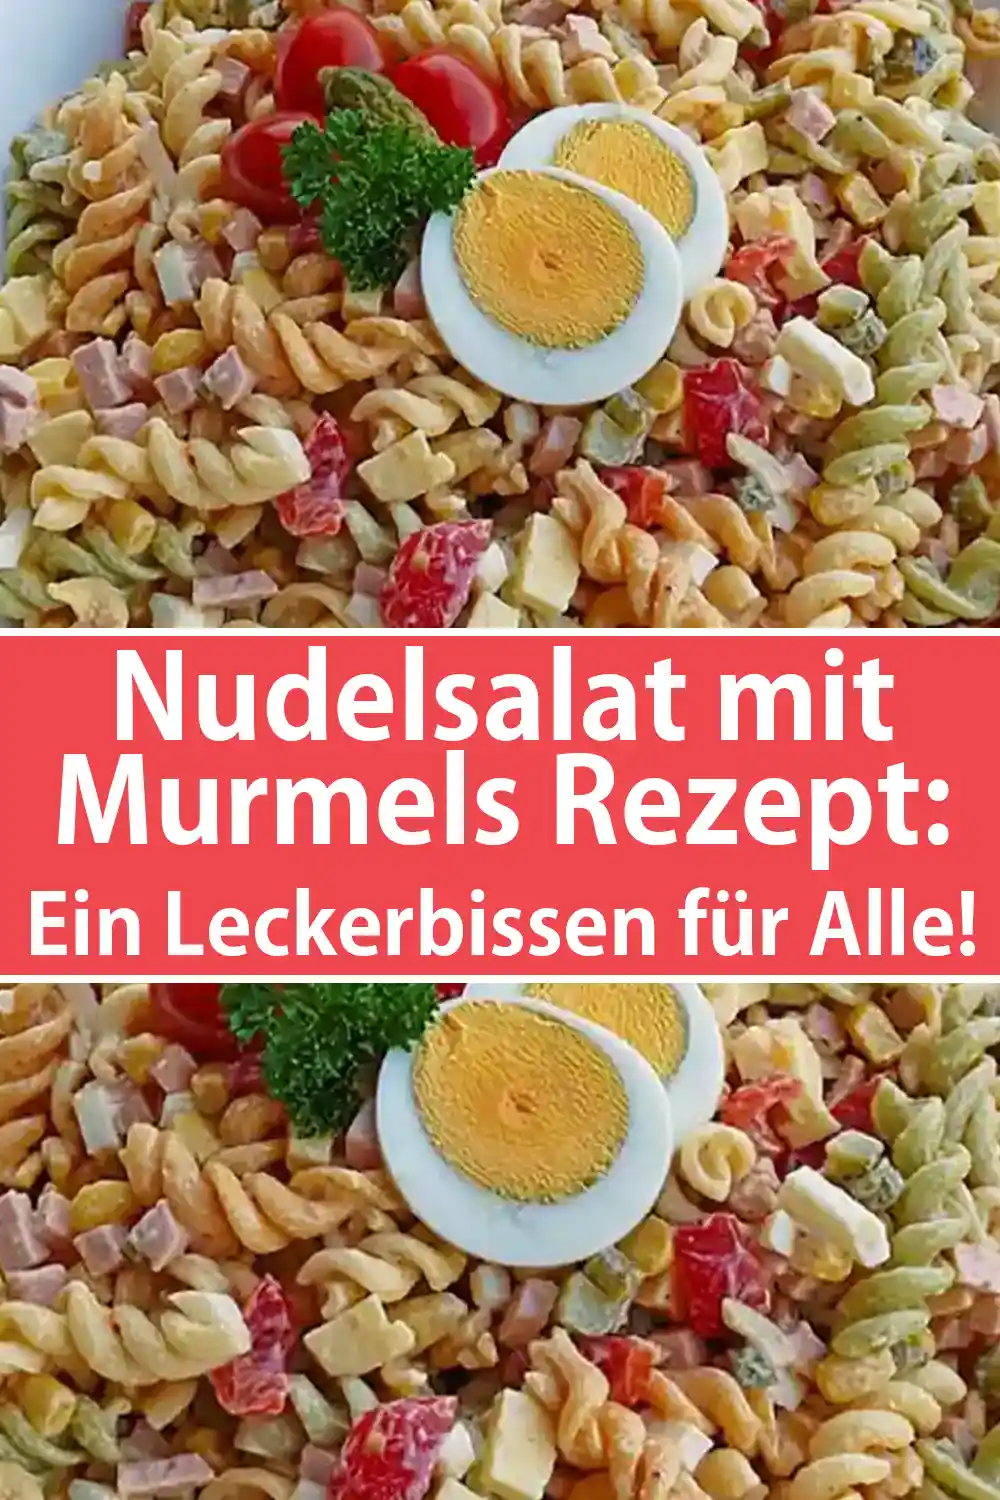 Nudelsalat mit Murmels Rezept: Ein Leckerbissen für Alle!